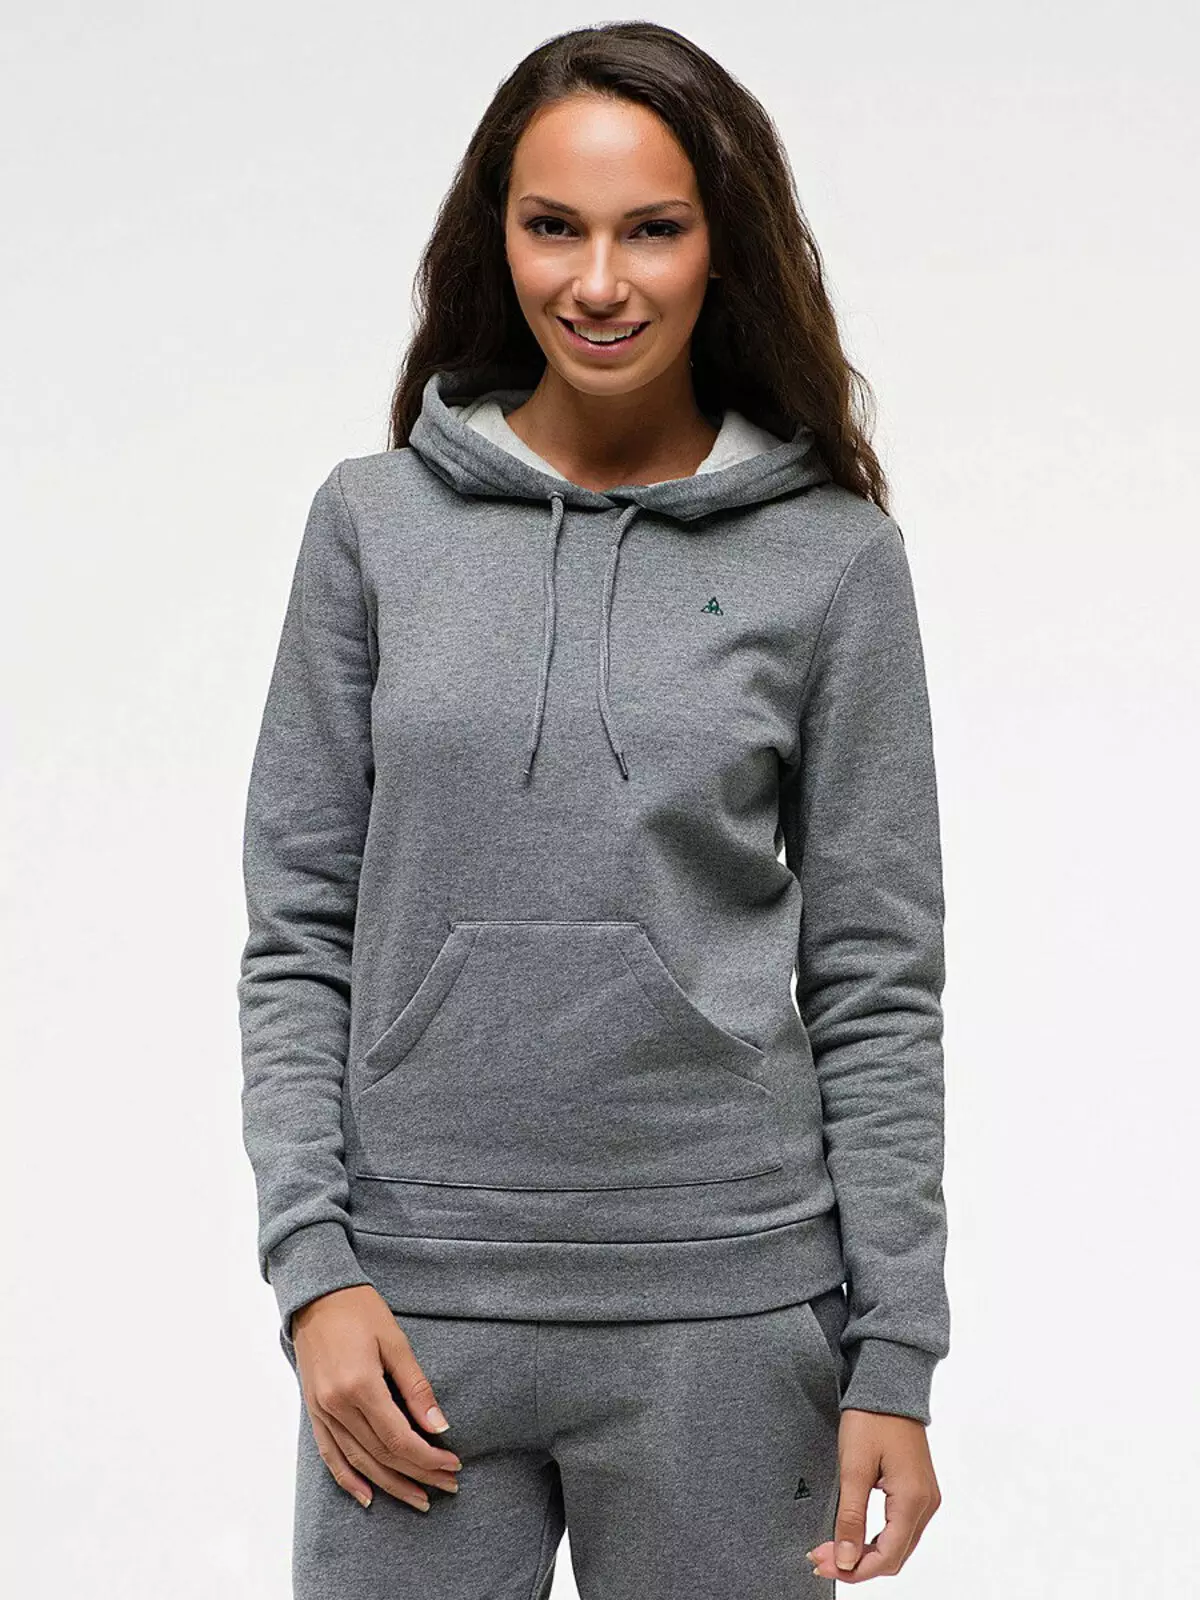 Weibliche Sweatshirts (238 Fotos): Modisch, Hoody, große Größen, Blitz, lang, Bomber, Sport, warm 1339_14